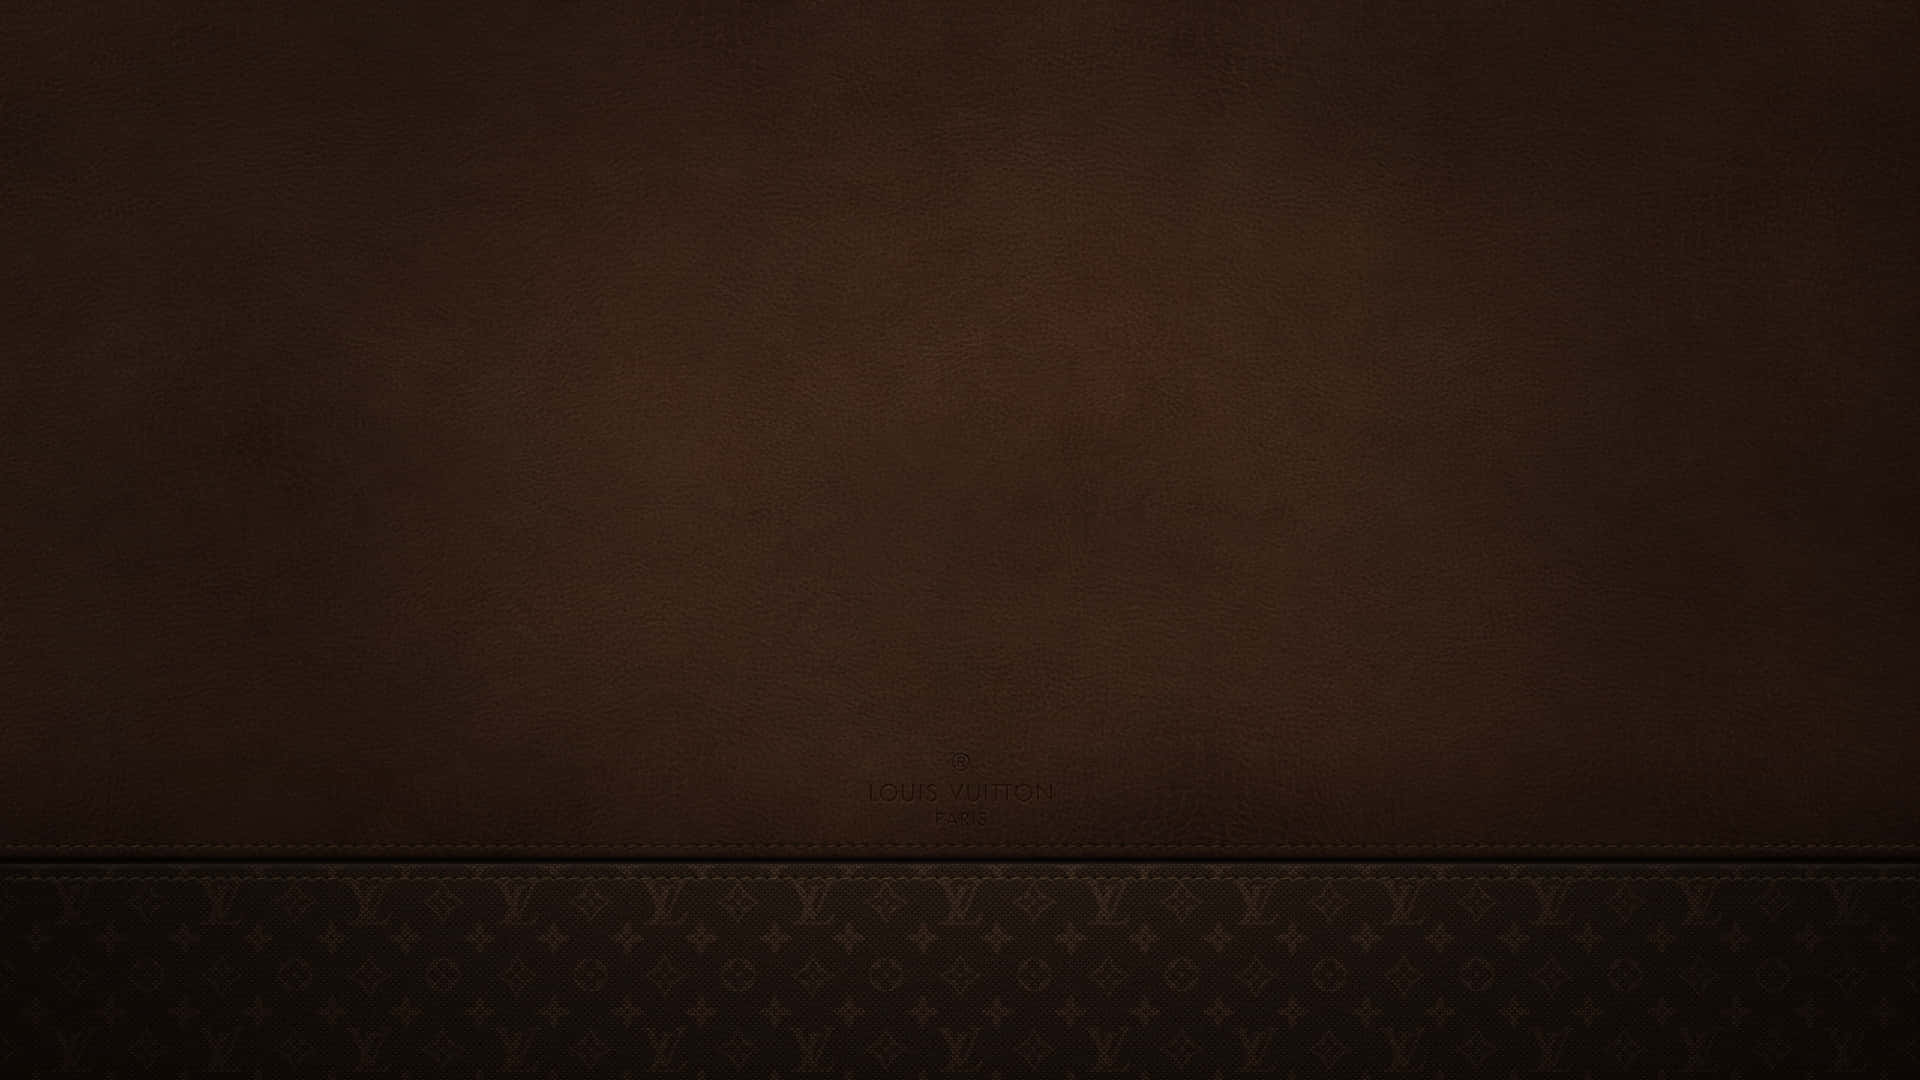 Kännlyxen Av Louis Vuitton I Imponerande 4k Upplösning. Wallpaper